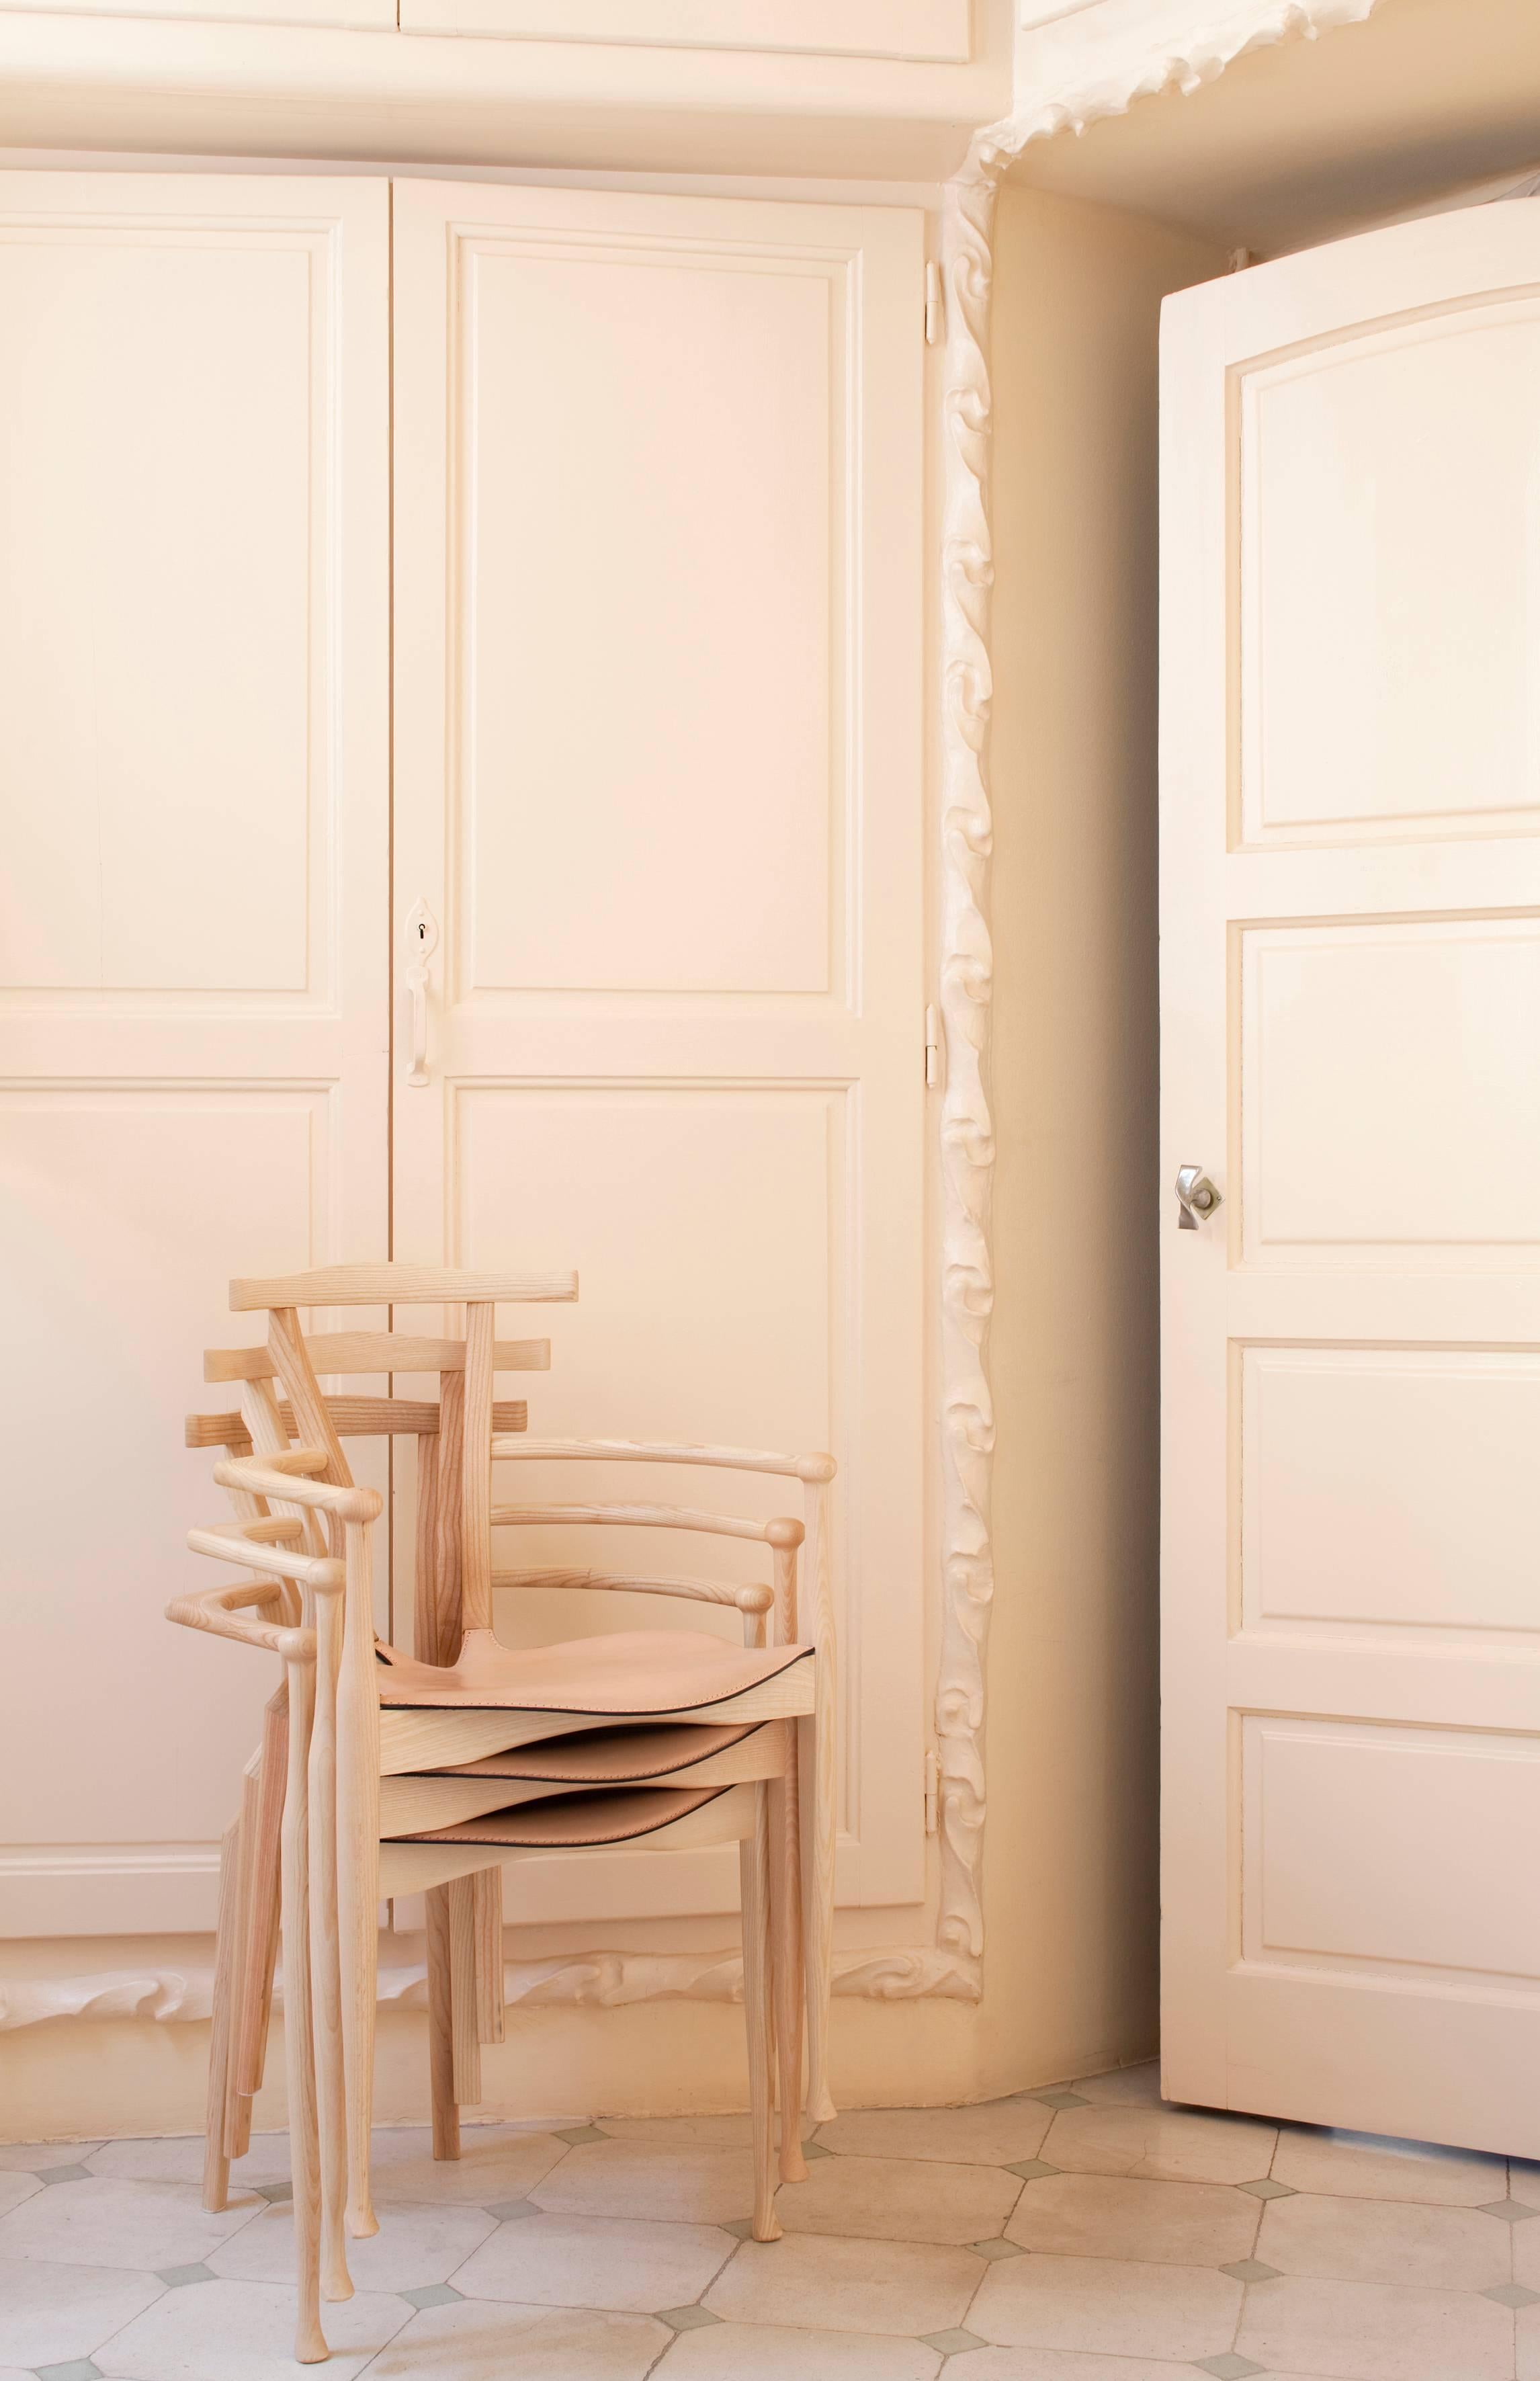 
Der Gaulino-Stuhl ist einer der besten Entwürfe von Oscar Tusquets und hat sich zu einer spanischen Design-Ikone entwickelt. Der Name stammt von den Einflüssen, die die Designer inspiriert haben, und wird ausschließlich aus Holz und Leder